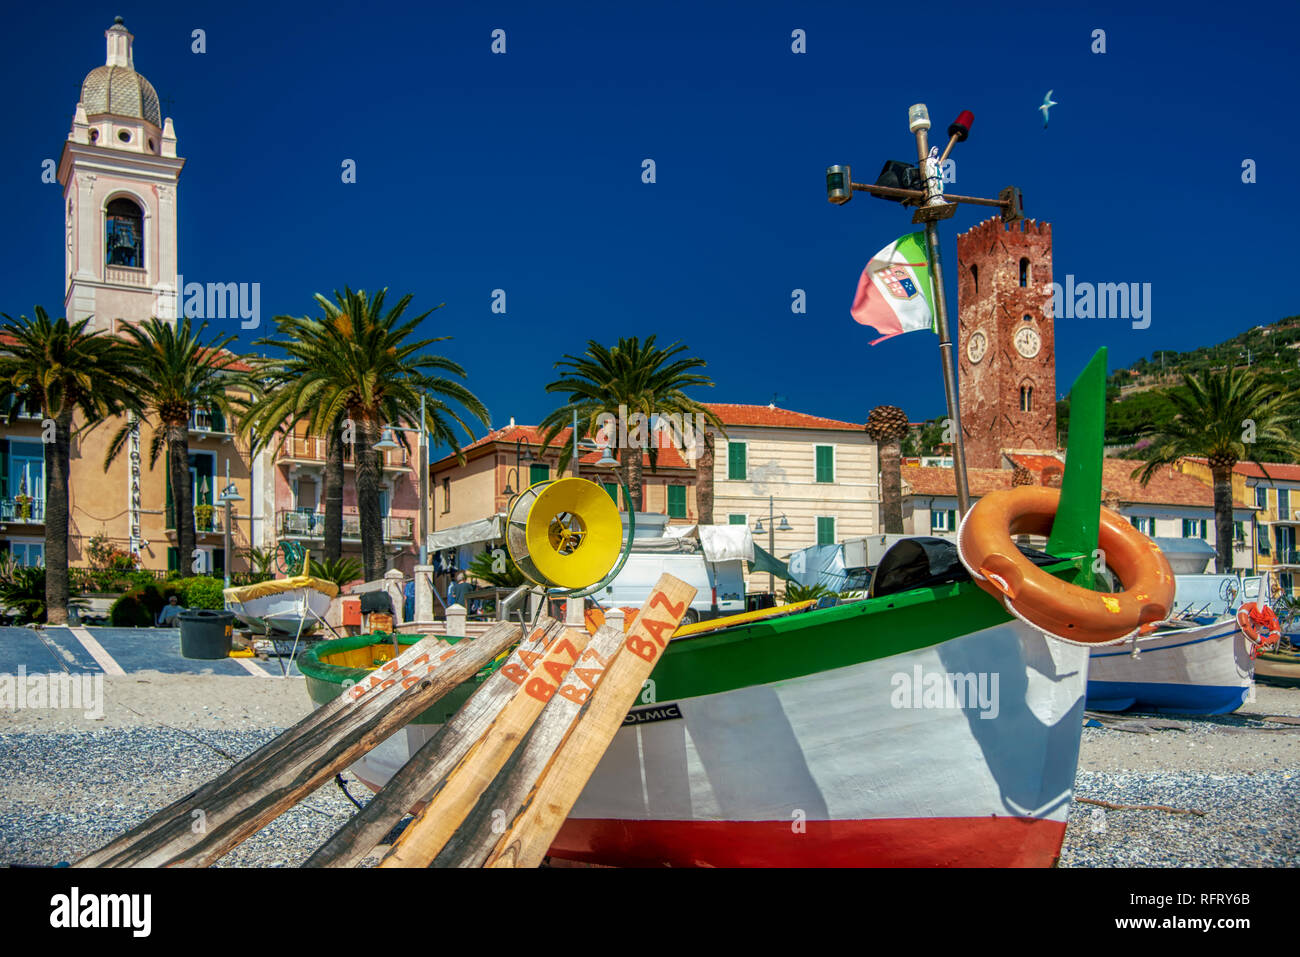 Vieux bateaux de pêche en bois colorés sur la plage, Noli, l'Italie médiévale historique avec des bâtiments au bord de l'eau derrière et de palmiers tropicaux sur la promenad Banque D'Images